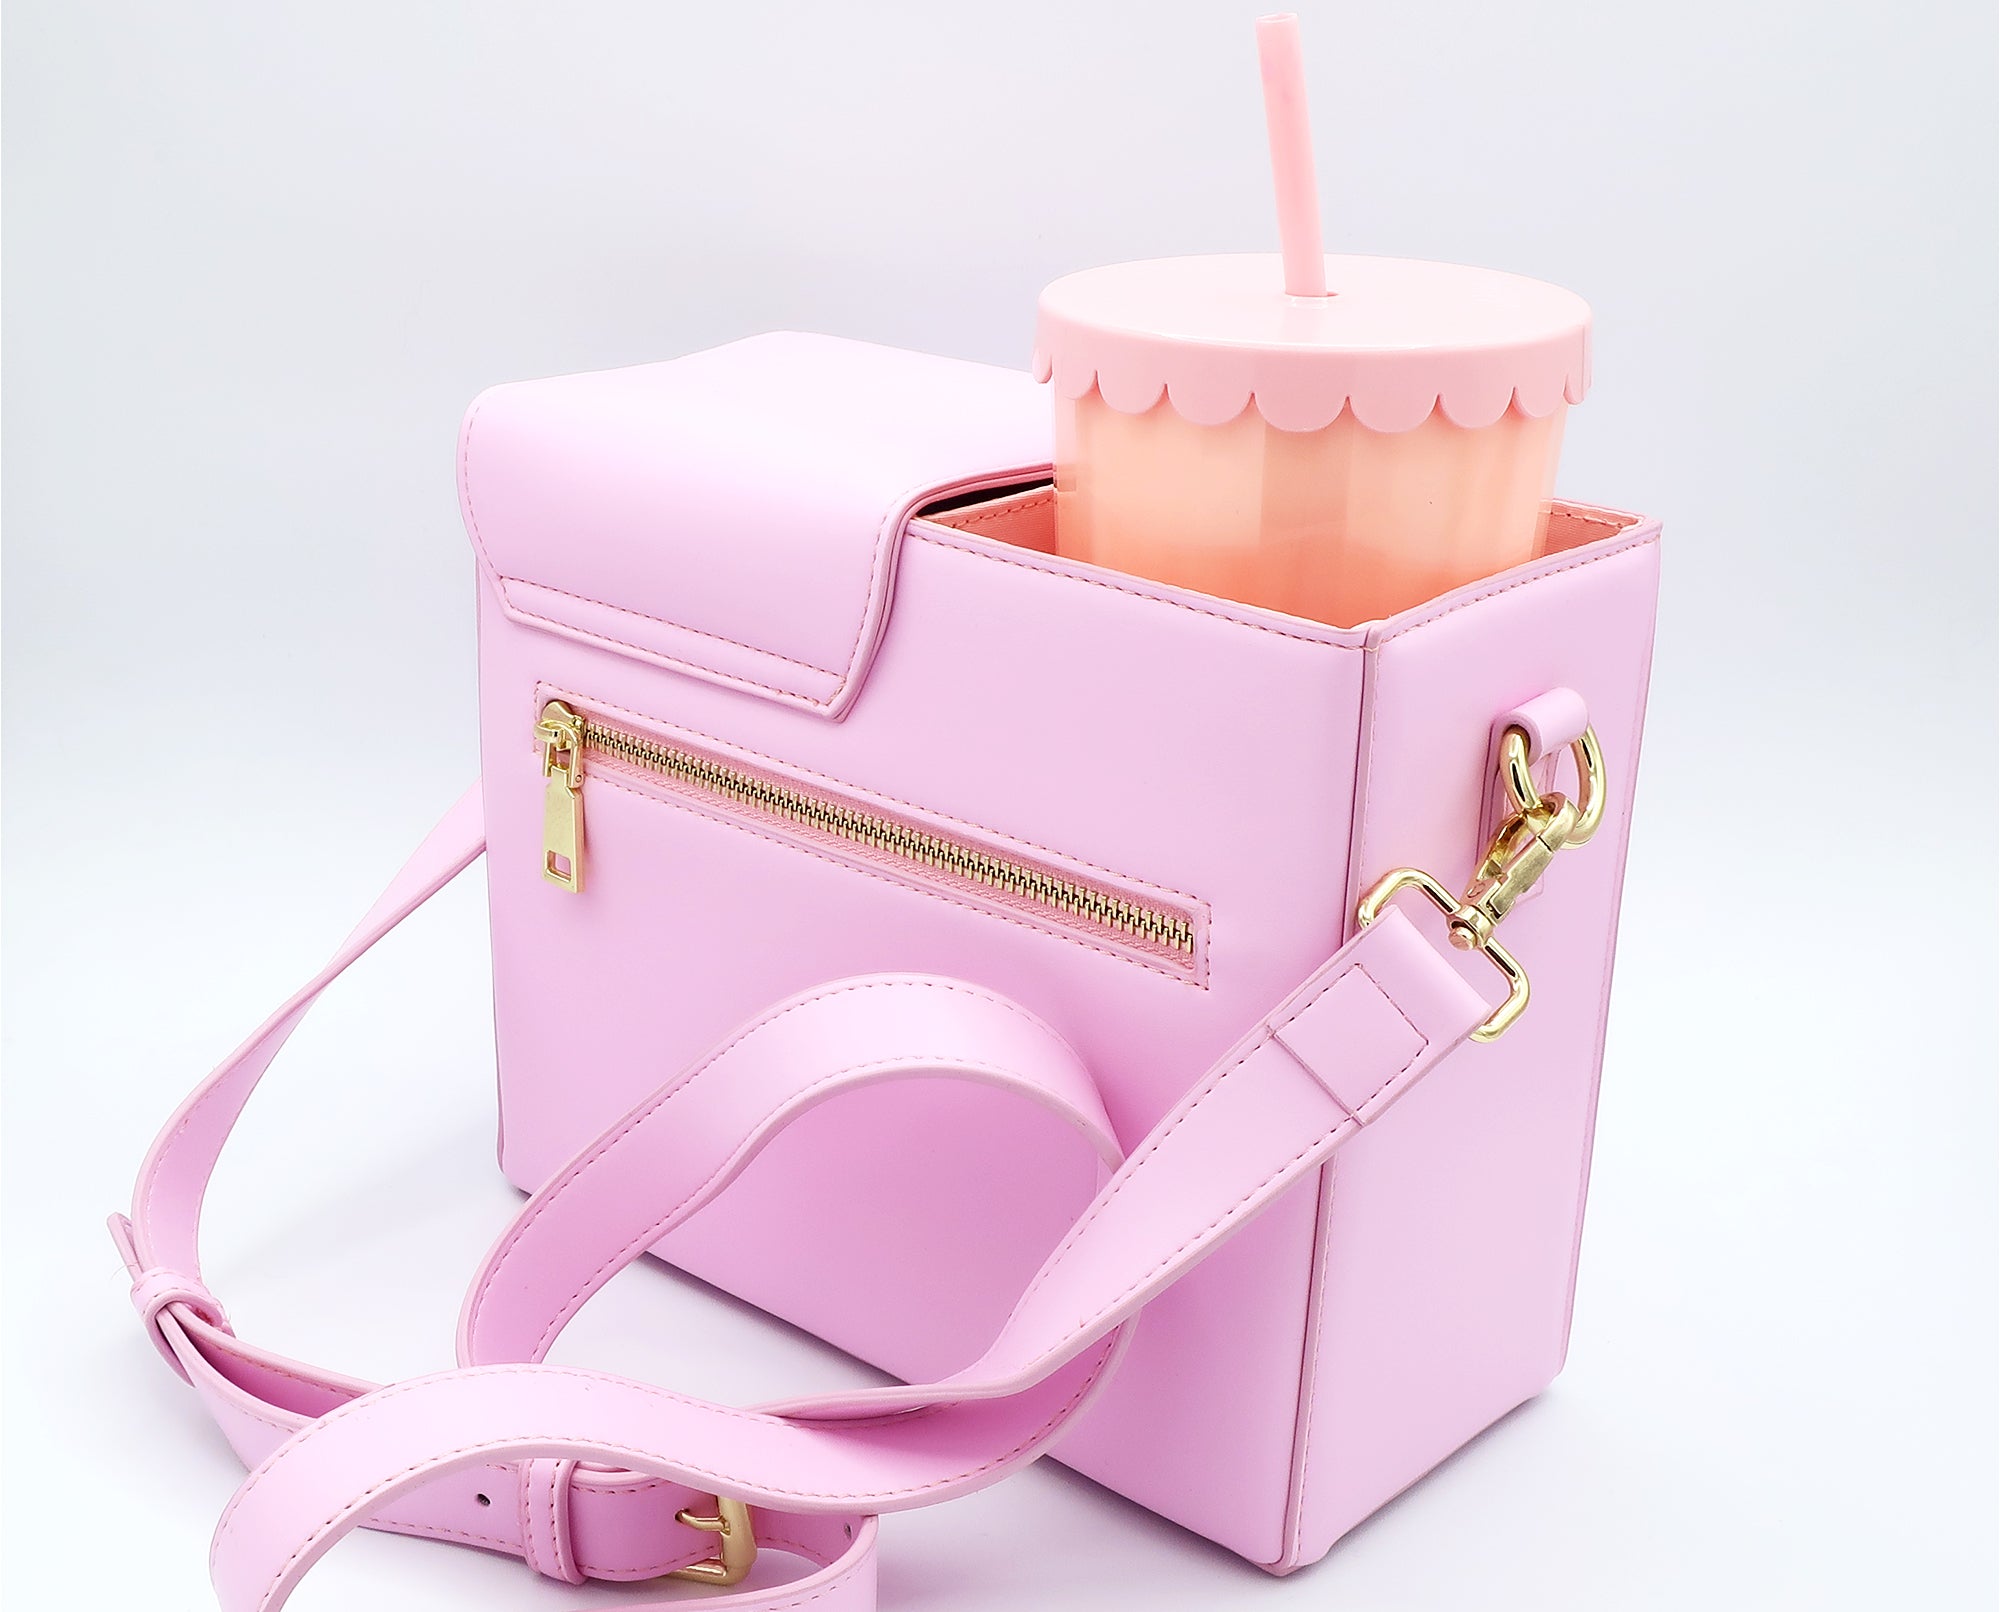 New purse designs! – kate gabrielle